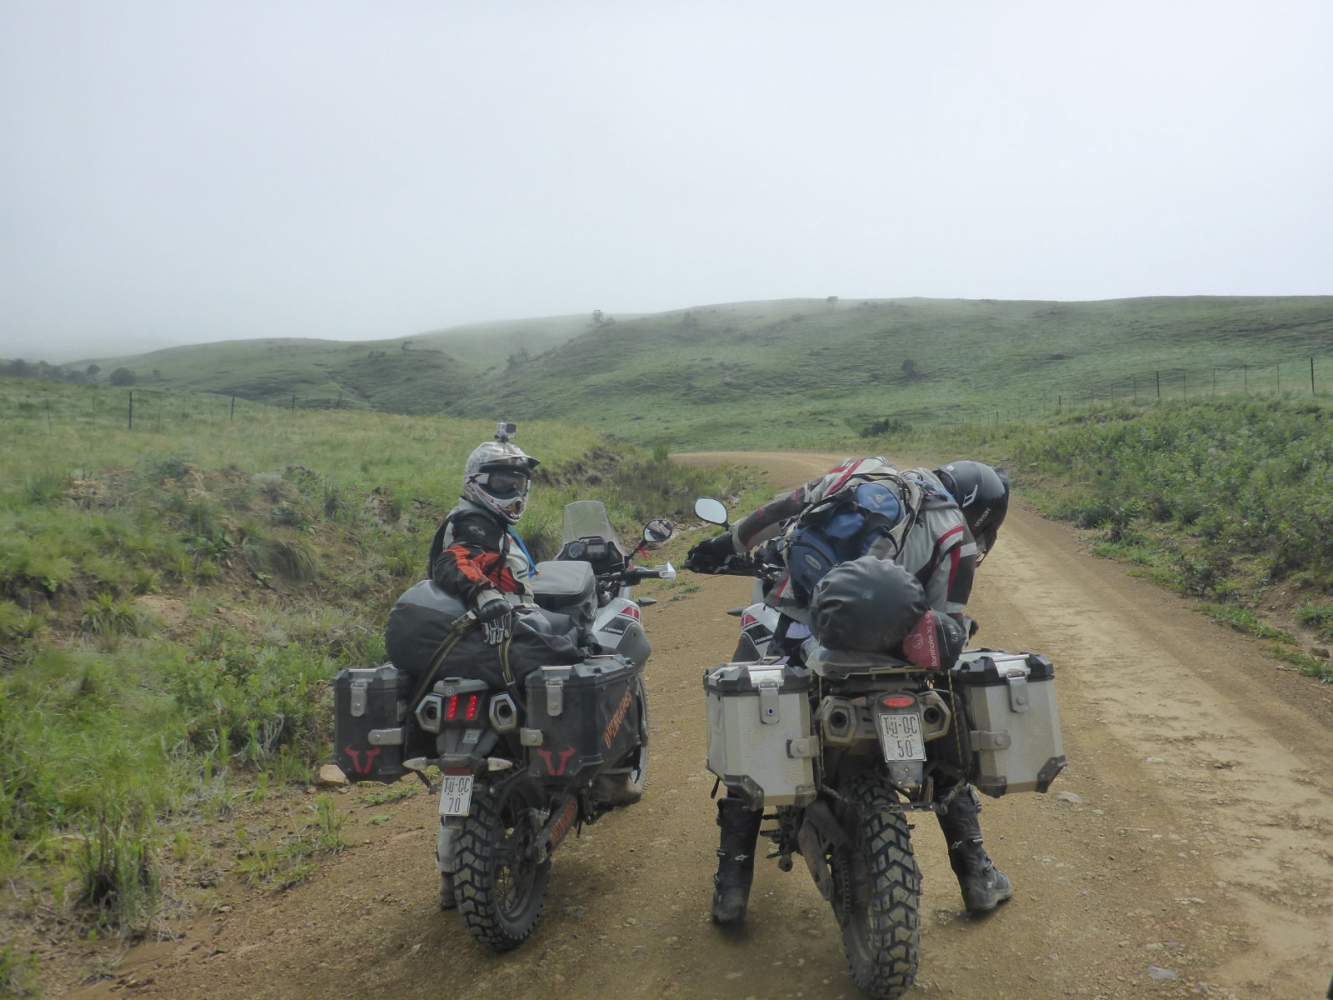 Mit den Motorrädern fahren wir durch das Königreich Swasiland/Eswatini